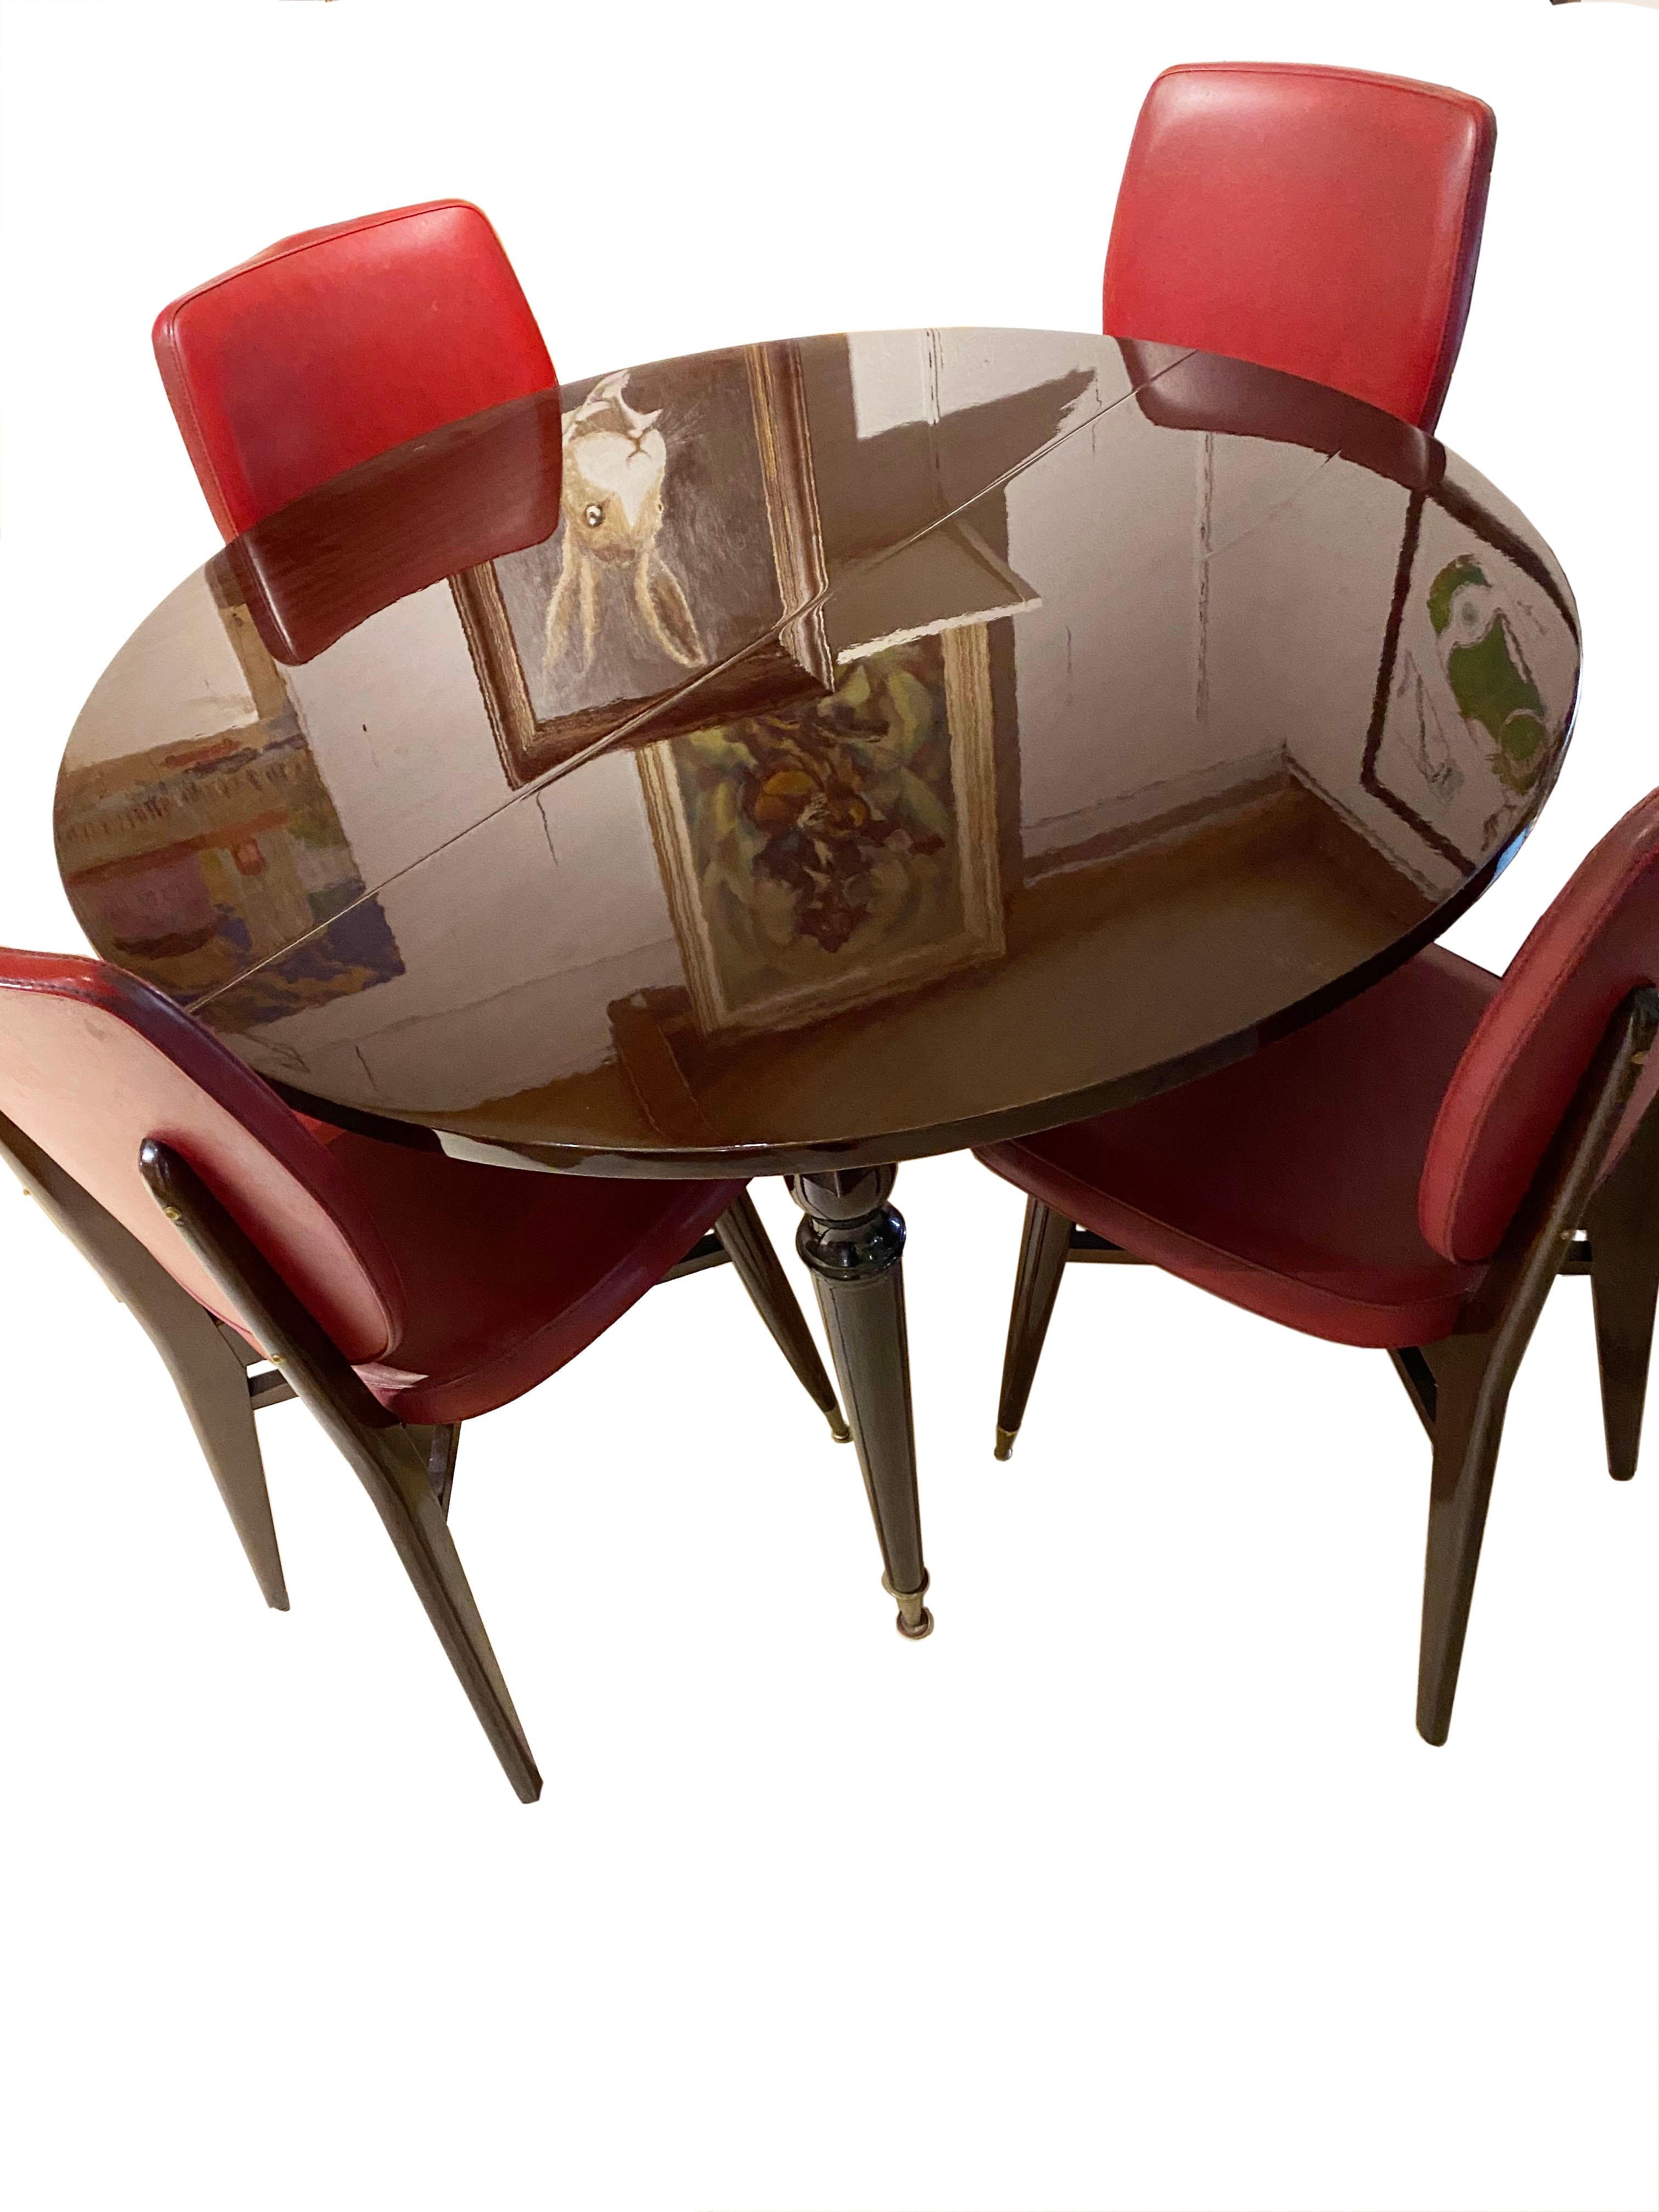 Speisesaal
mahagoni
tisch + 2 Erweiterungen,
um 1950
Maße: 4 Fuß niedrig
110 cm im Durchmesser
4 Stühle (90 x 40 x 40)
890.